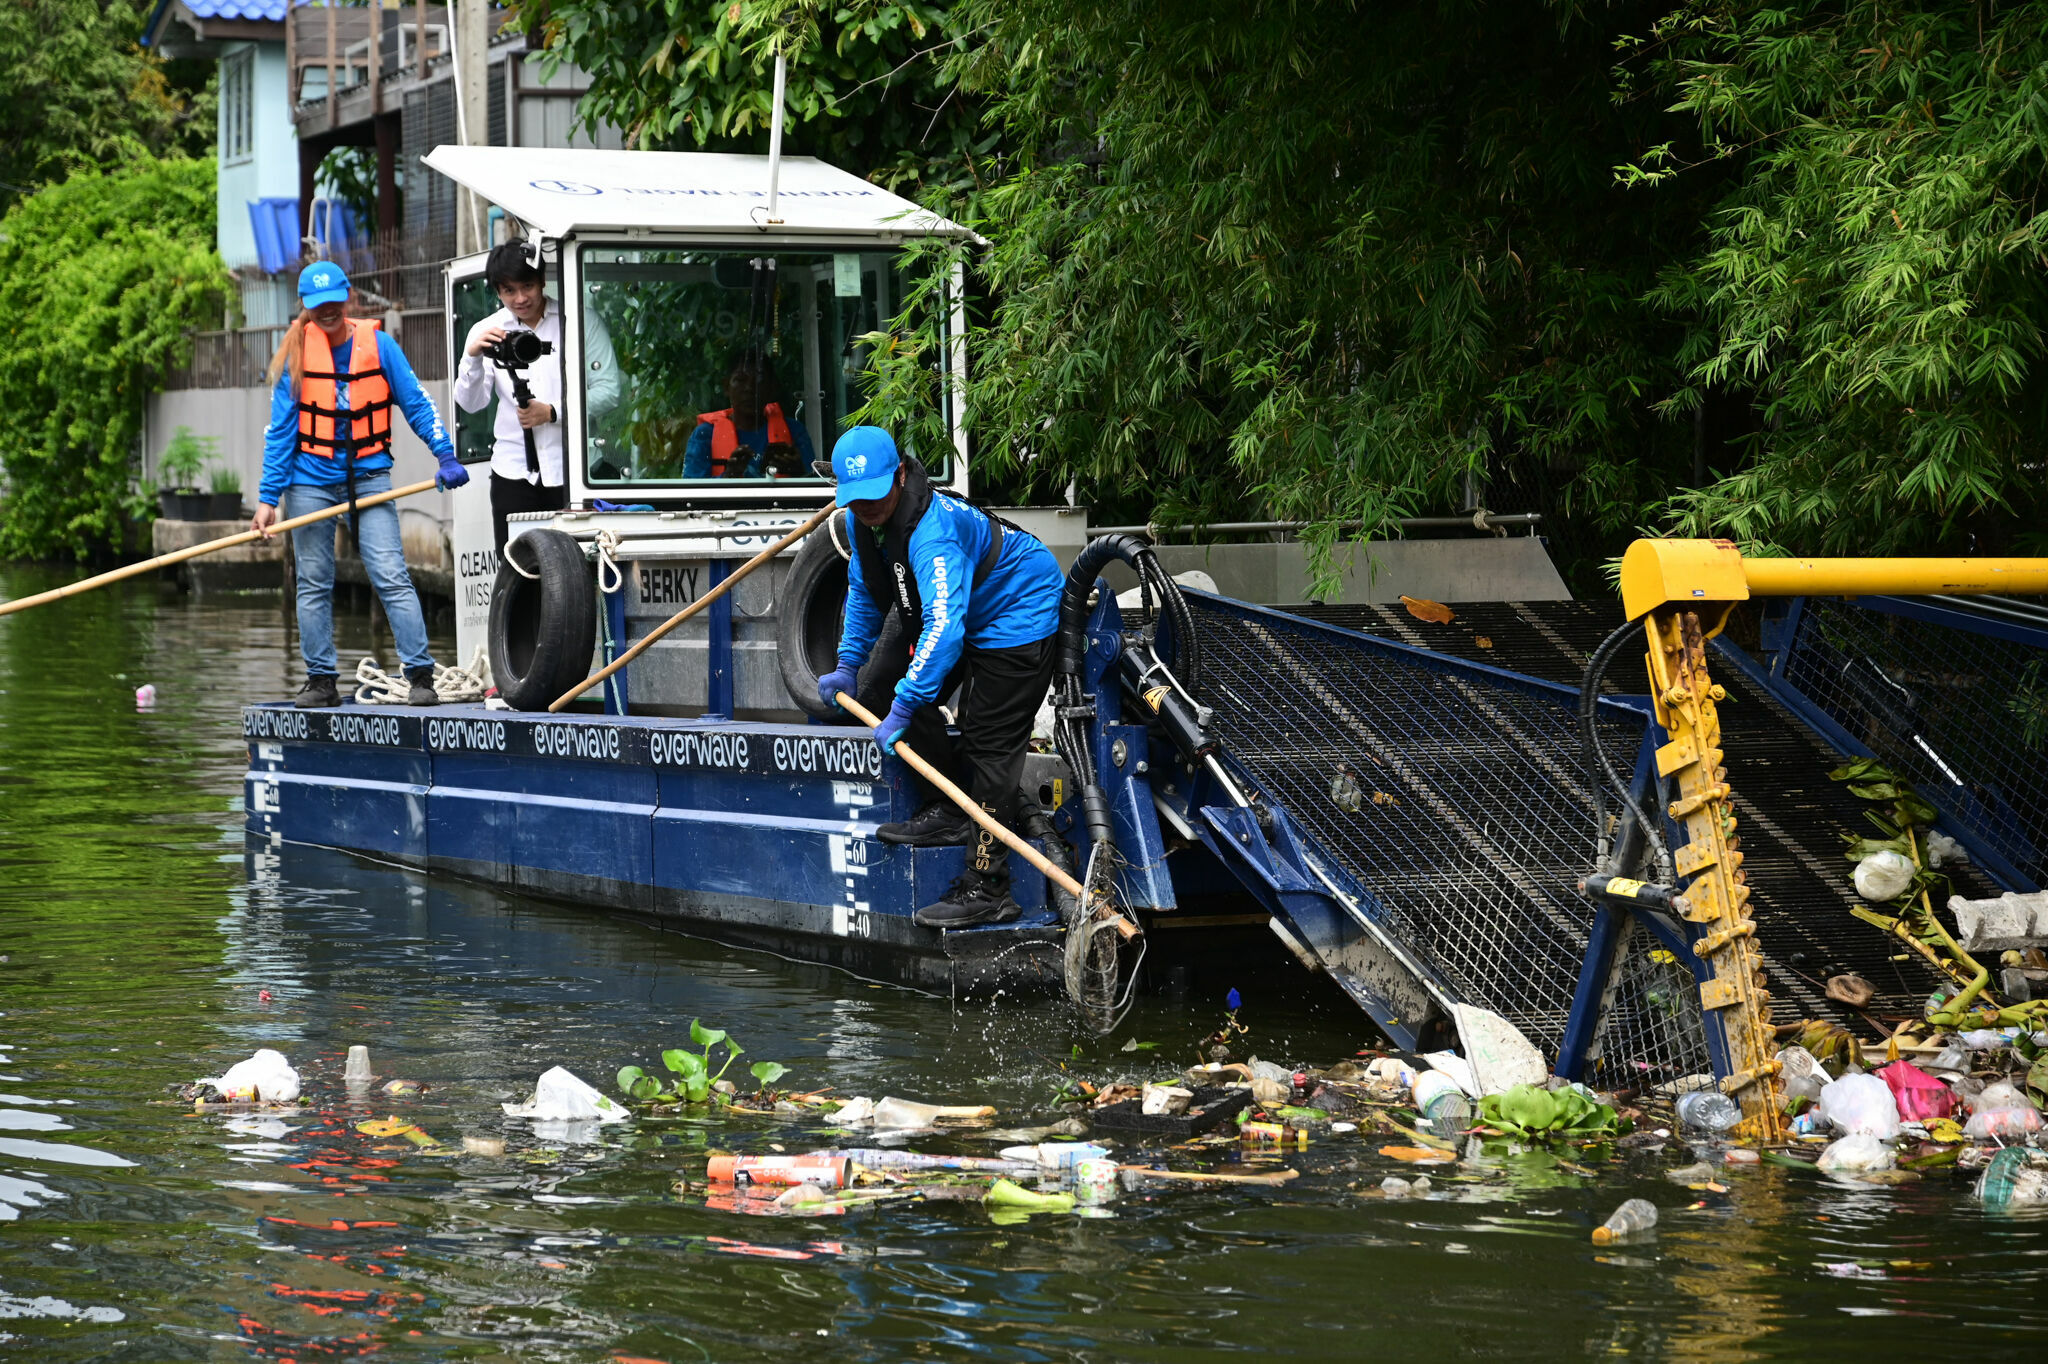 Mit Hightech und lokalen Partnern gegen den Plastikmüll in Thailands Flüssen